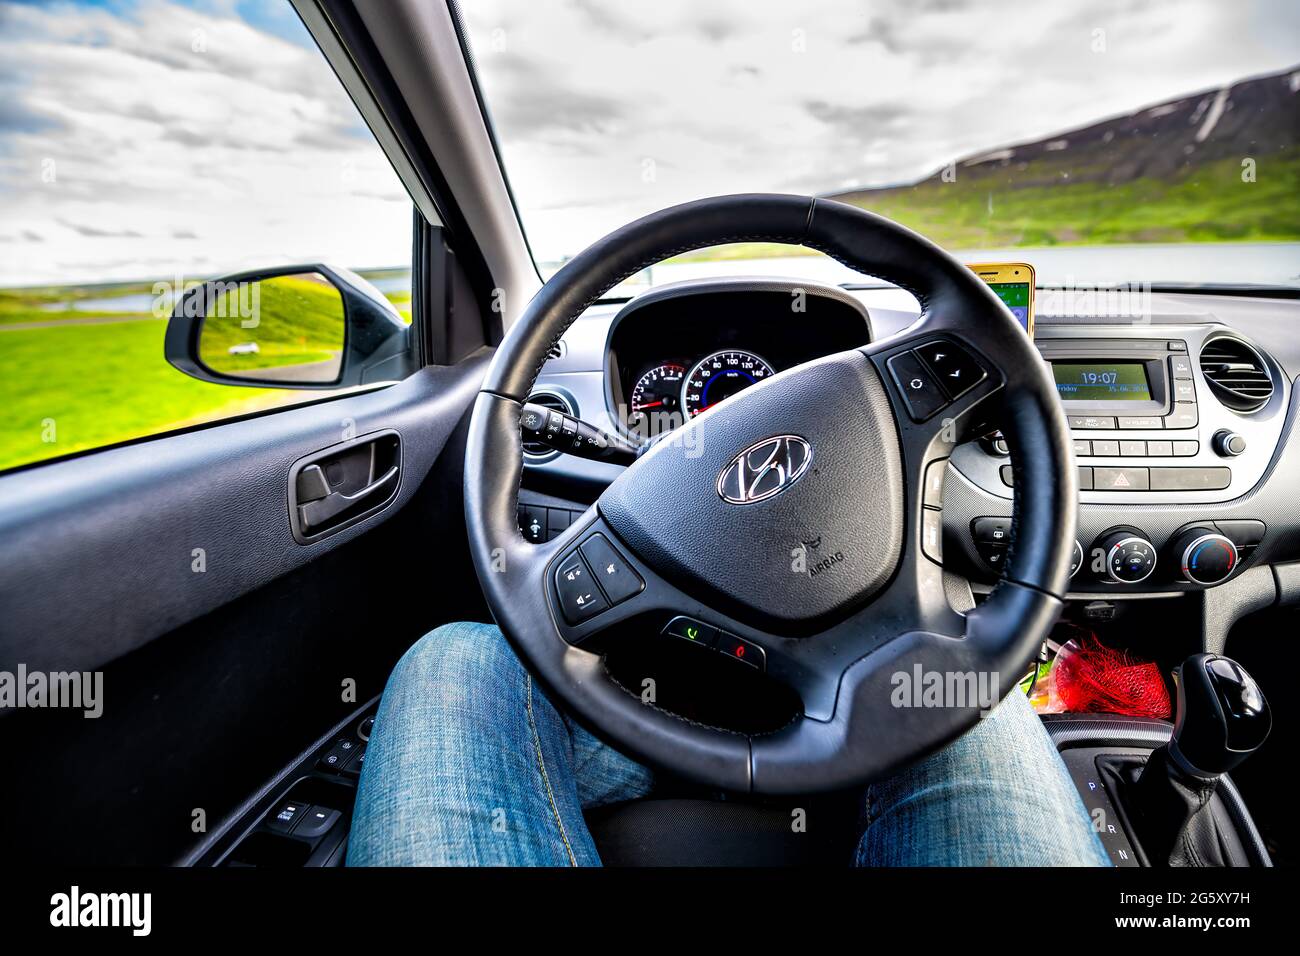 Krafla, Islande - 16 juin 2018: Petite voiture intelligente Hyundai i10 point de vue conduite sur la célèbre rocade avec paysage islandais dans la fenêtre Banque D'Images